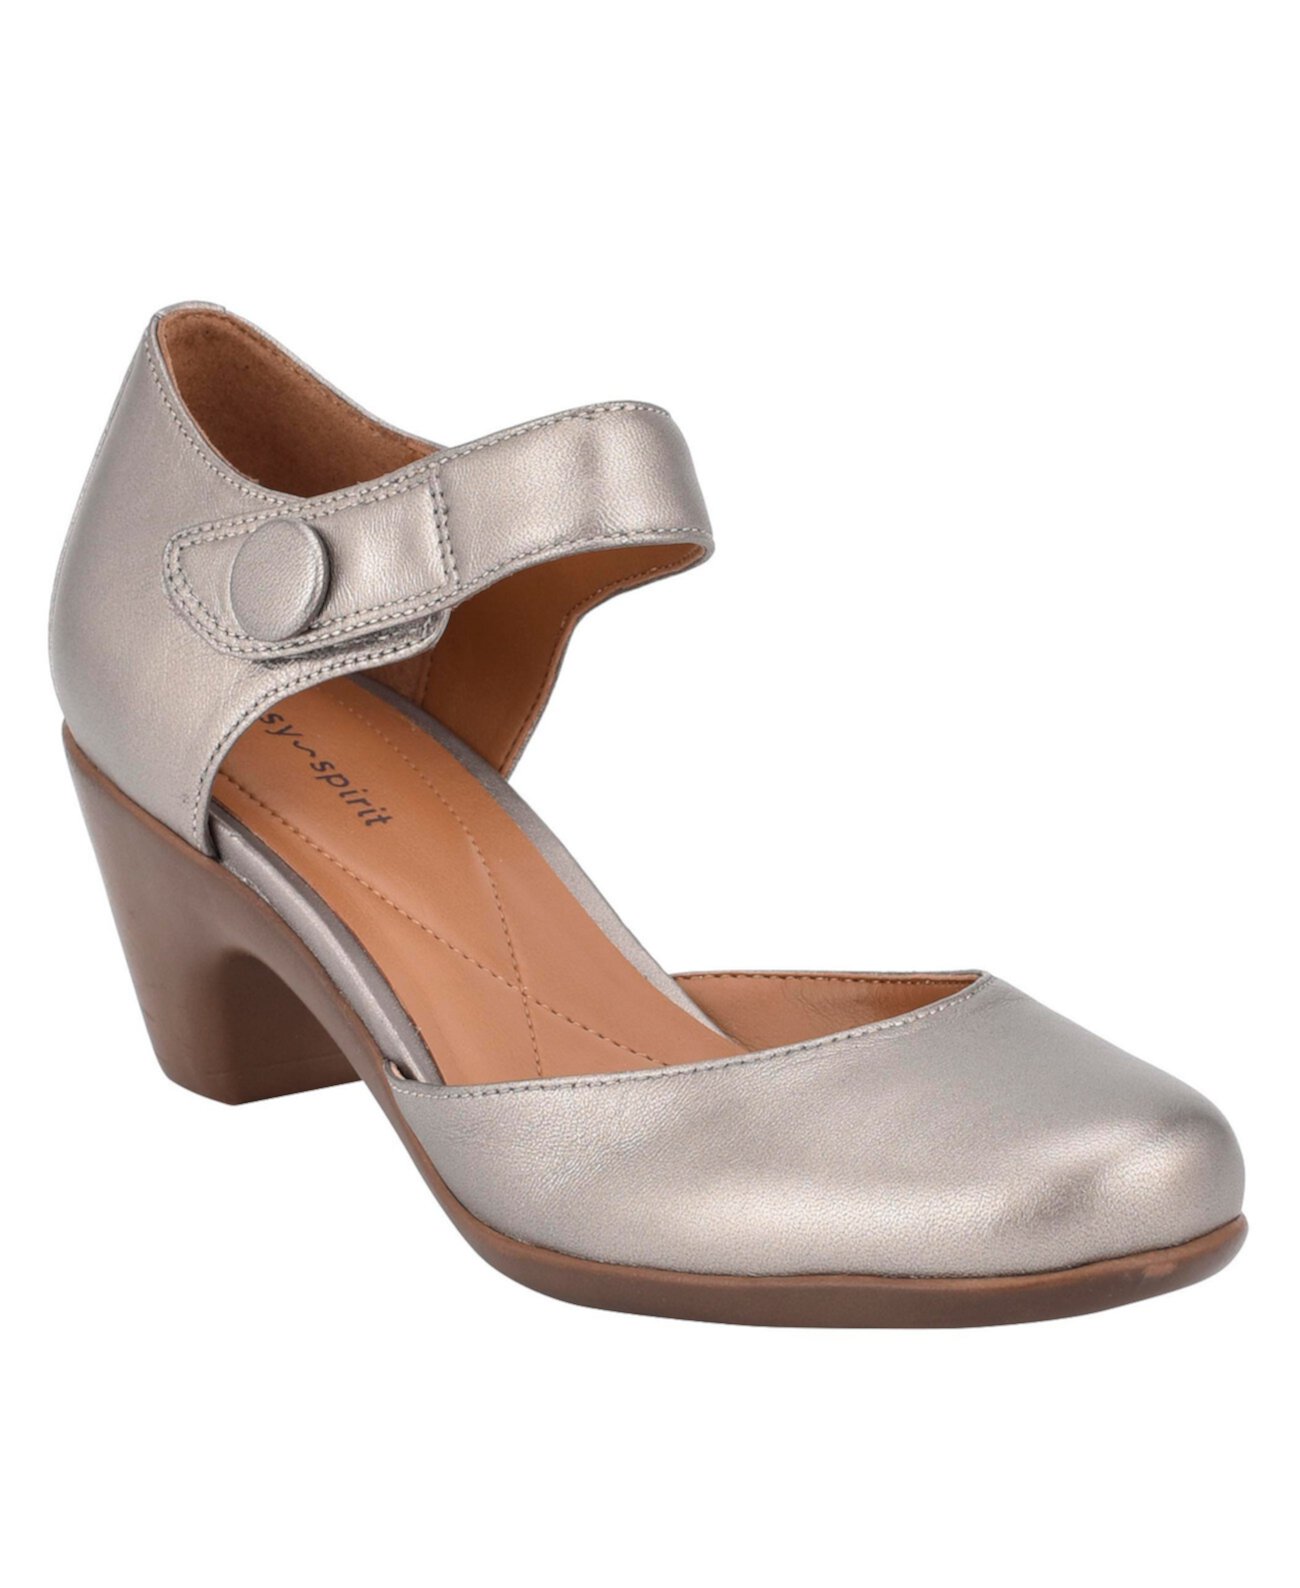 Clarice mary jane heels